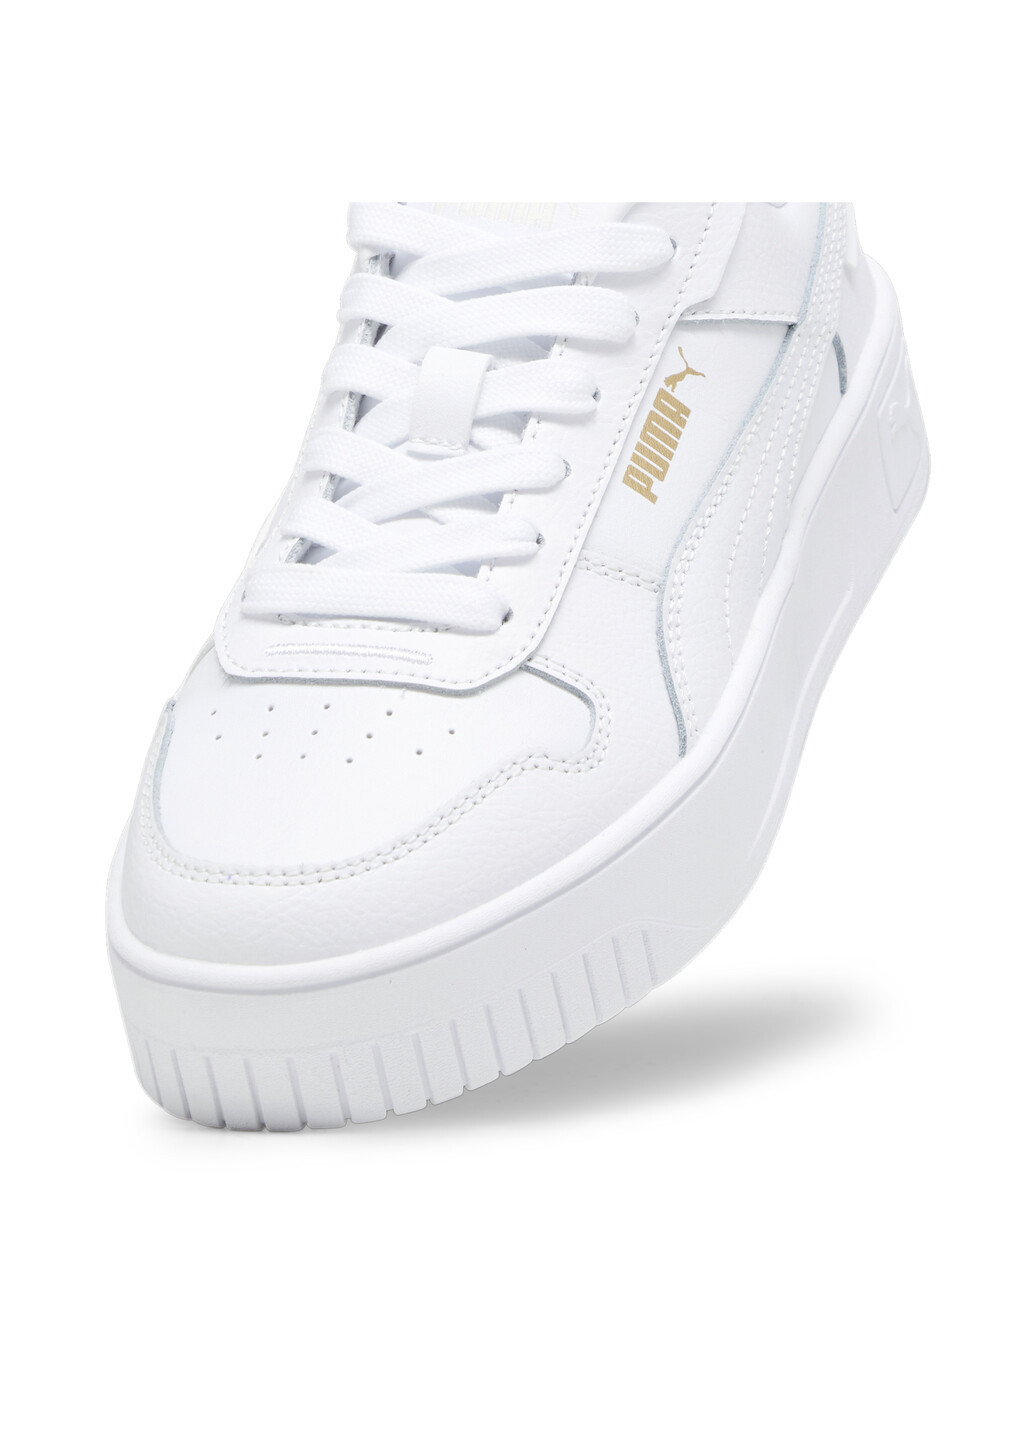 Белые всесезонные кеды carina street youth sneakers Puma